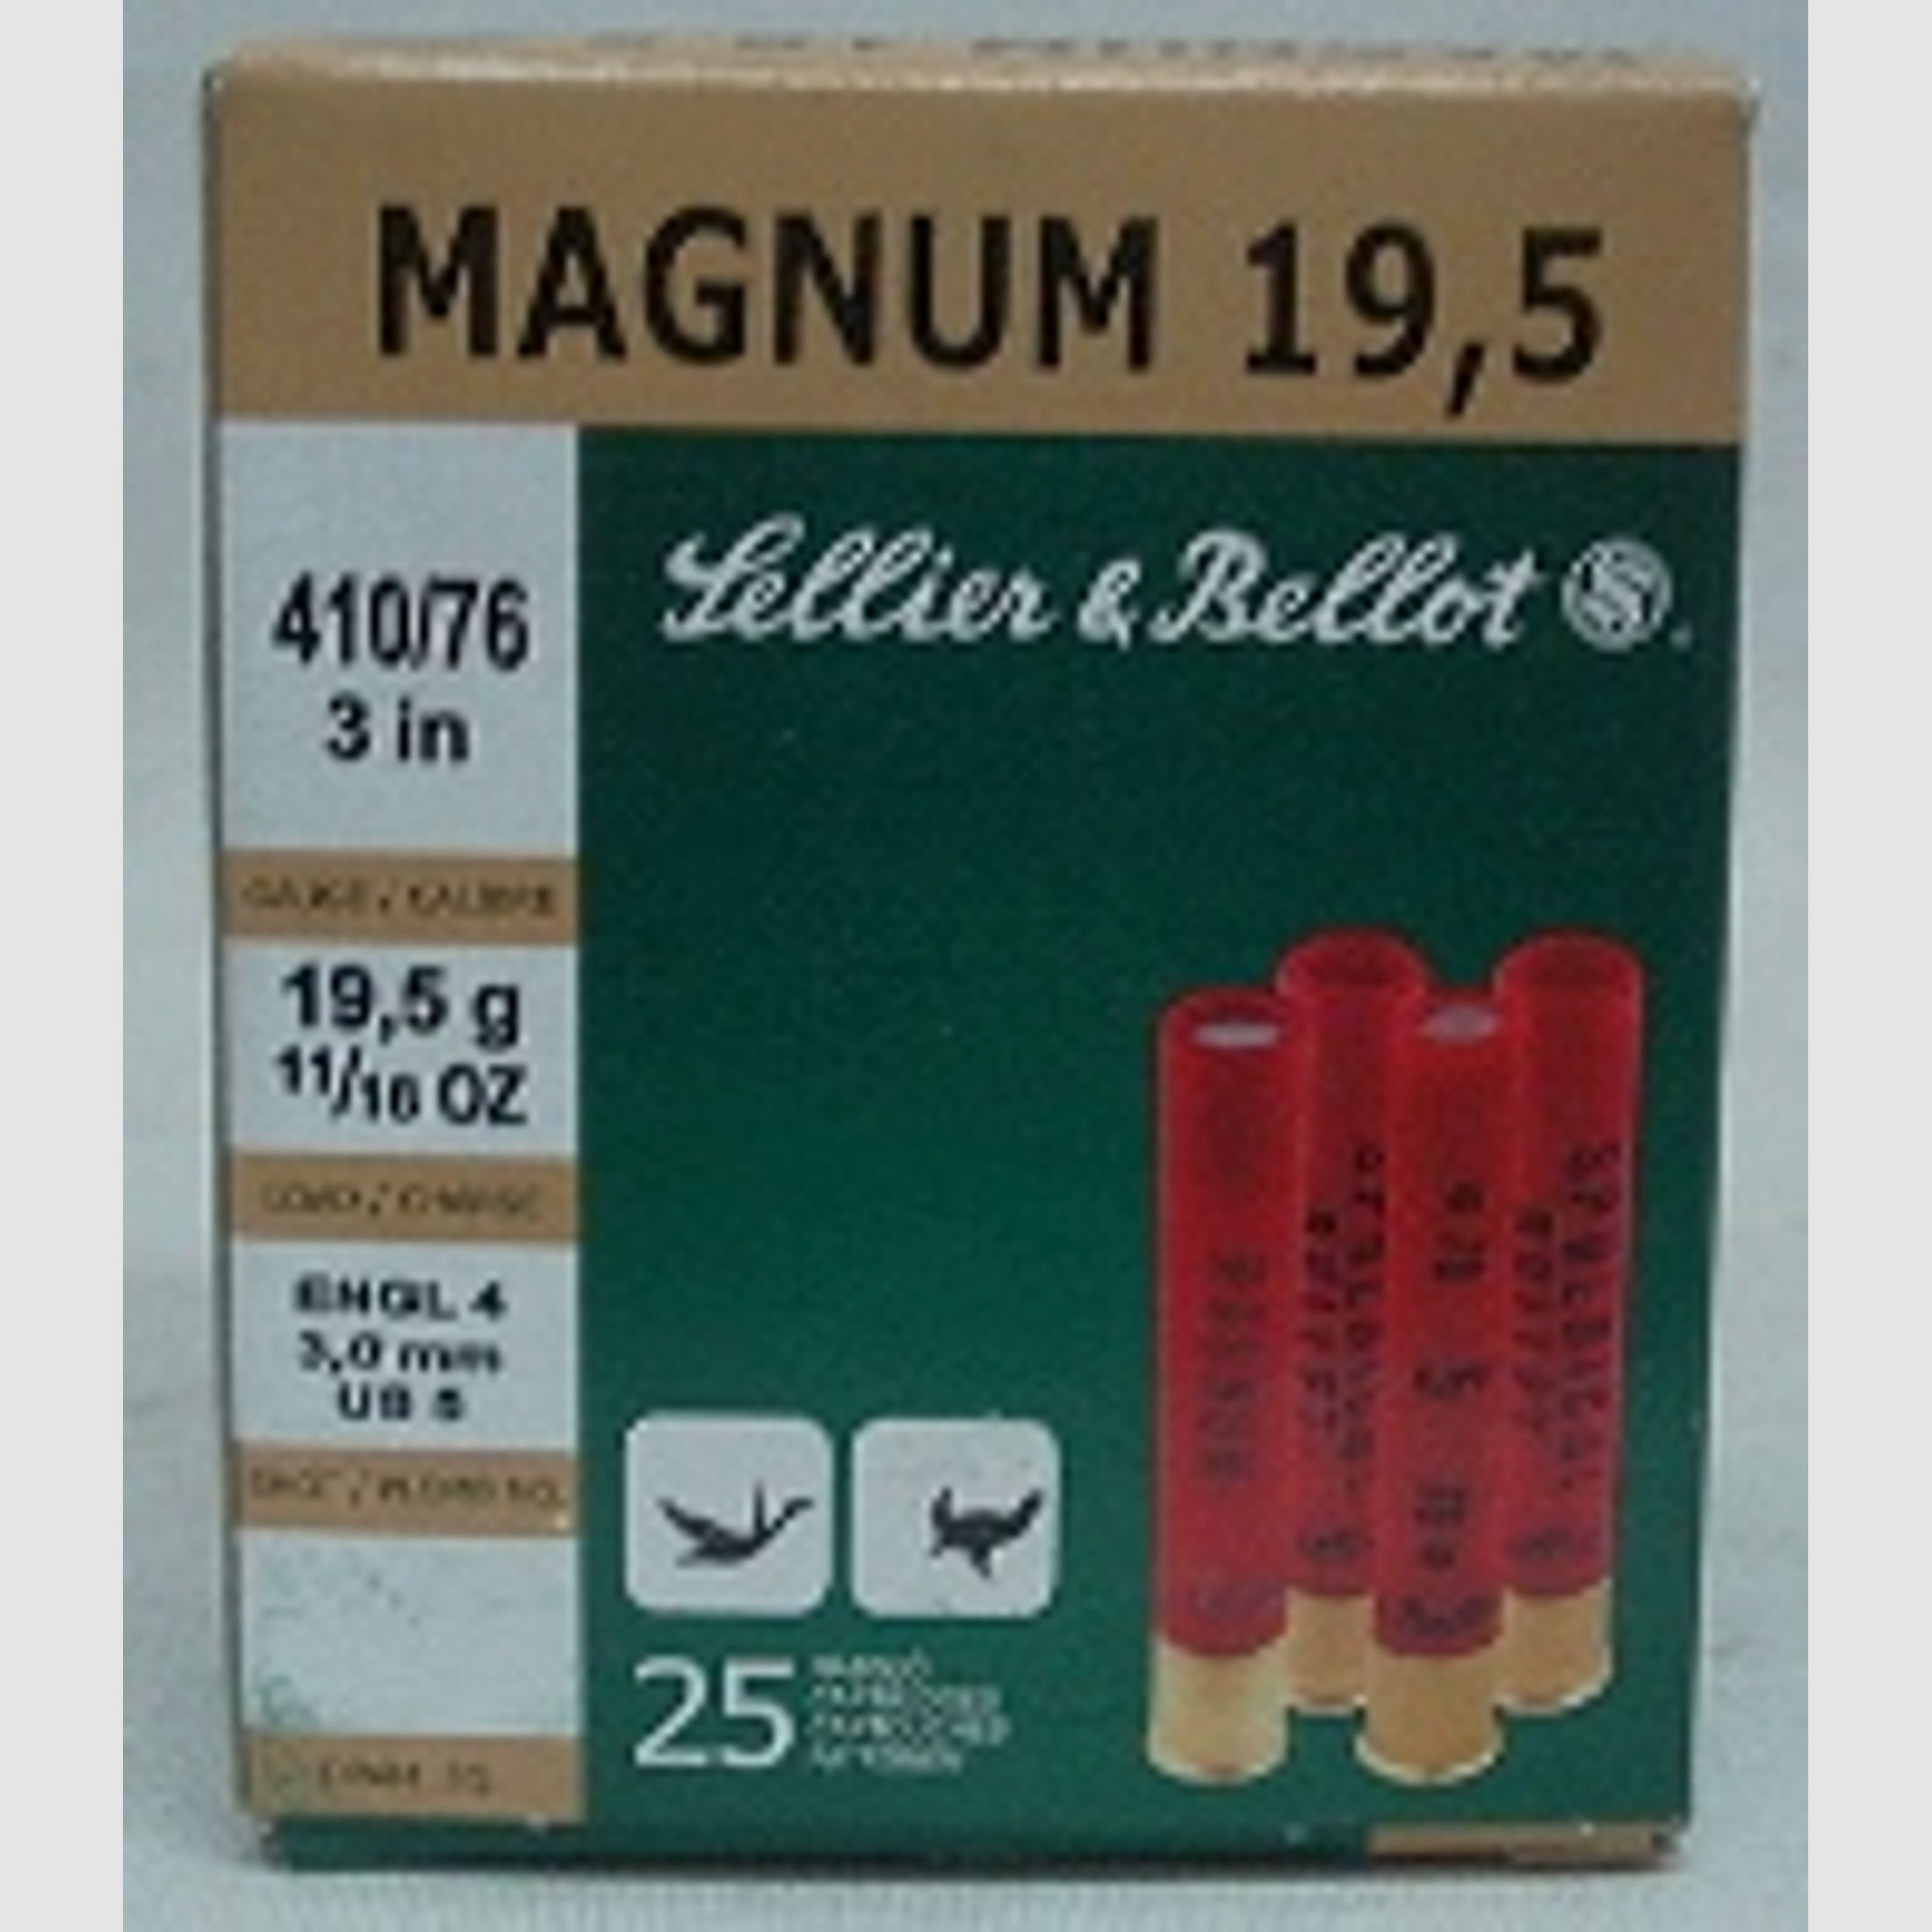 Magnum .410/76 - 19,5g/3,0mm (a25)